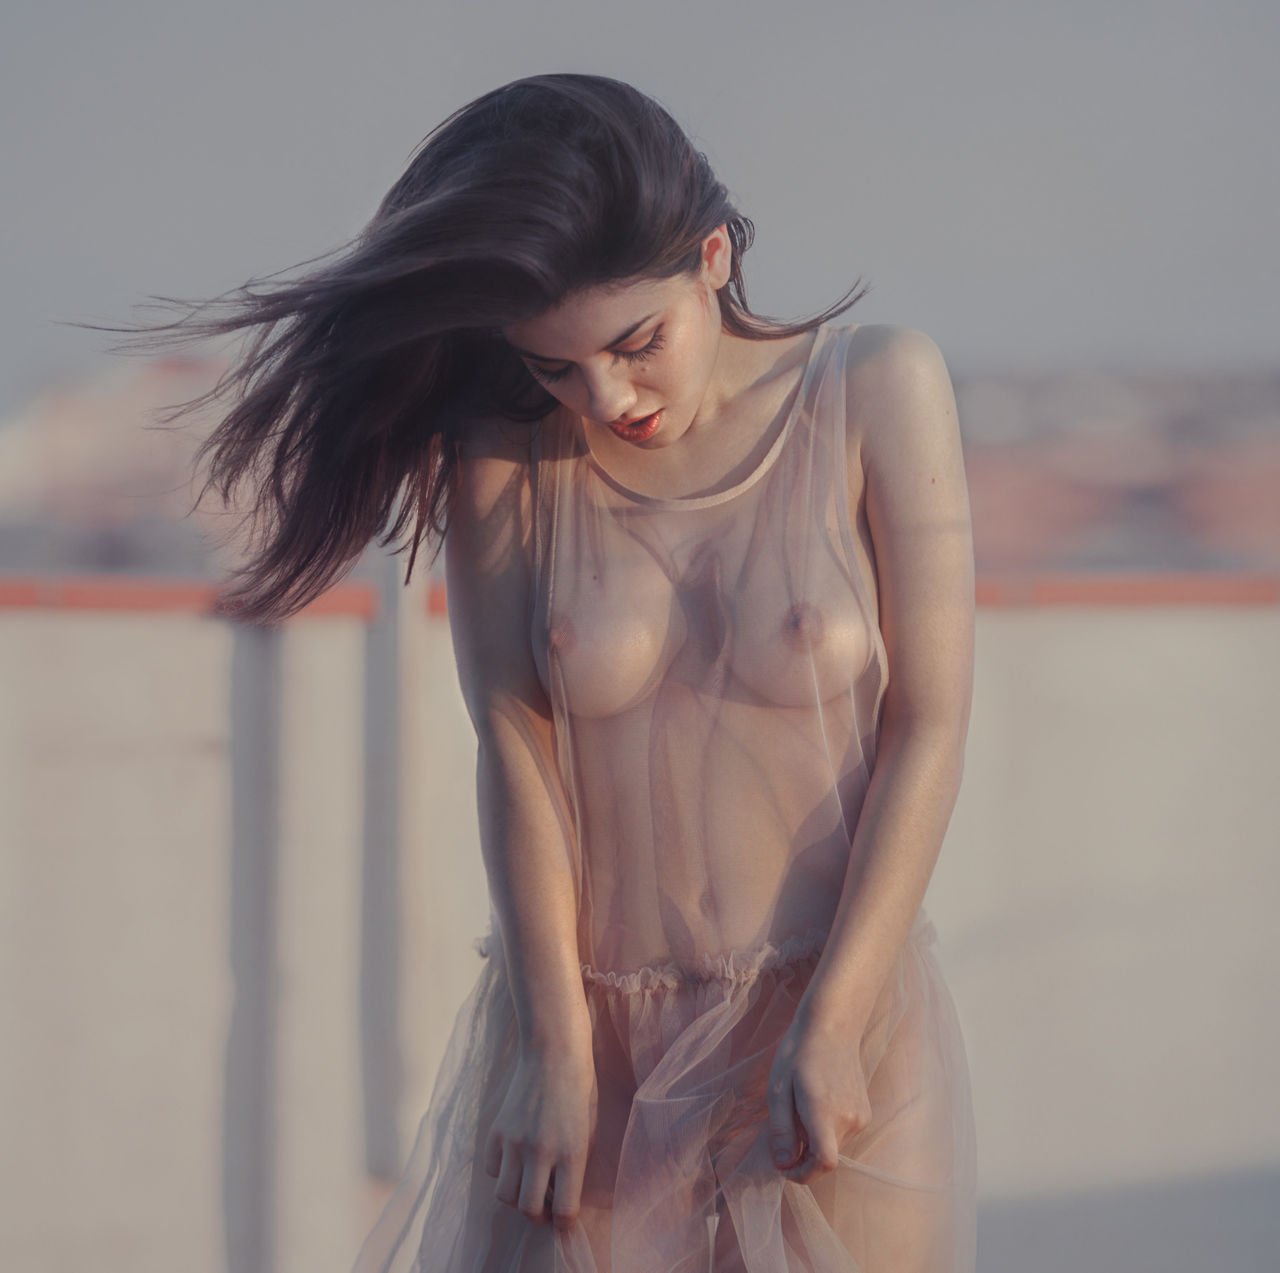 Delaia Gonzalez Nude  Sexy (21 Photos)